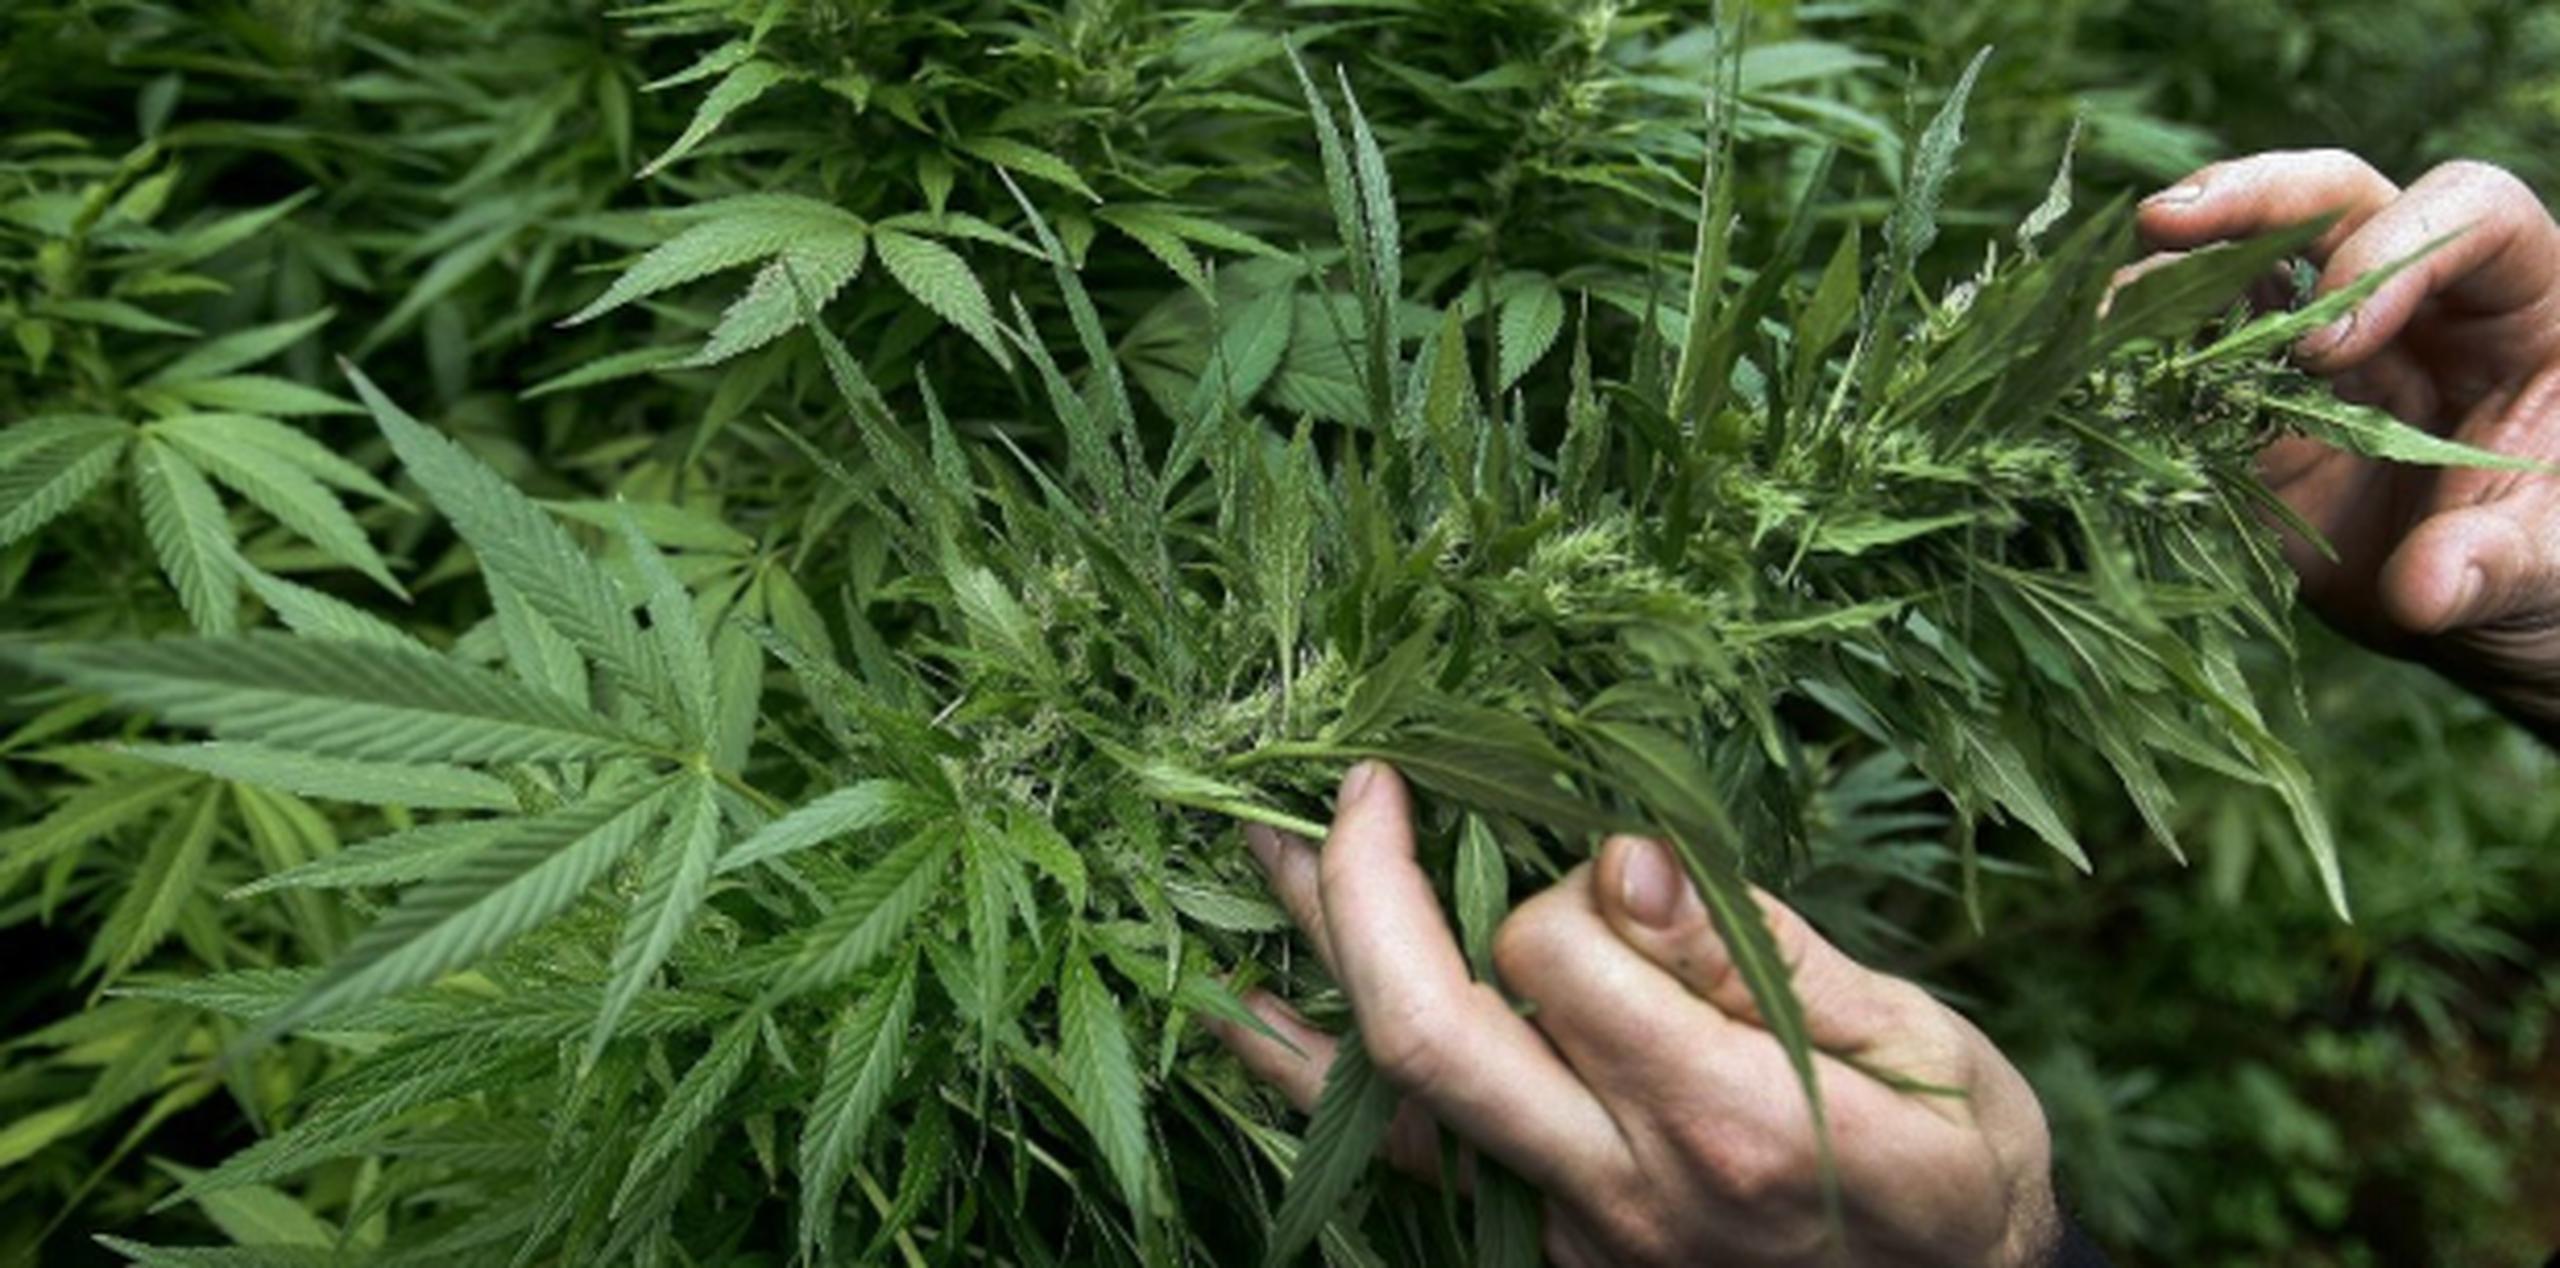 La PRMCA también ha consignado ante los cuerpos legislativos su oposición a la Resolución Conjunta 152 de la Cámara de Representantes, la cual propuso paralizar la emisión de todas las licencias para la industria de cannabis medicinal. (Archivo)